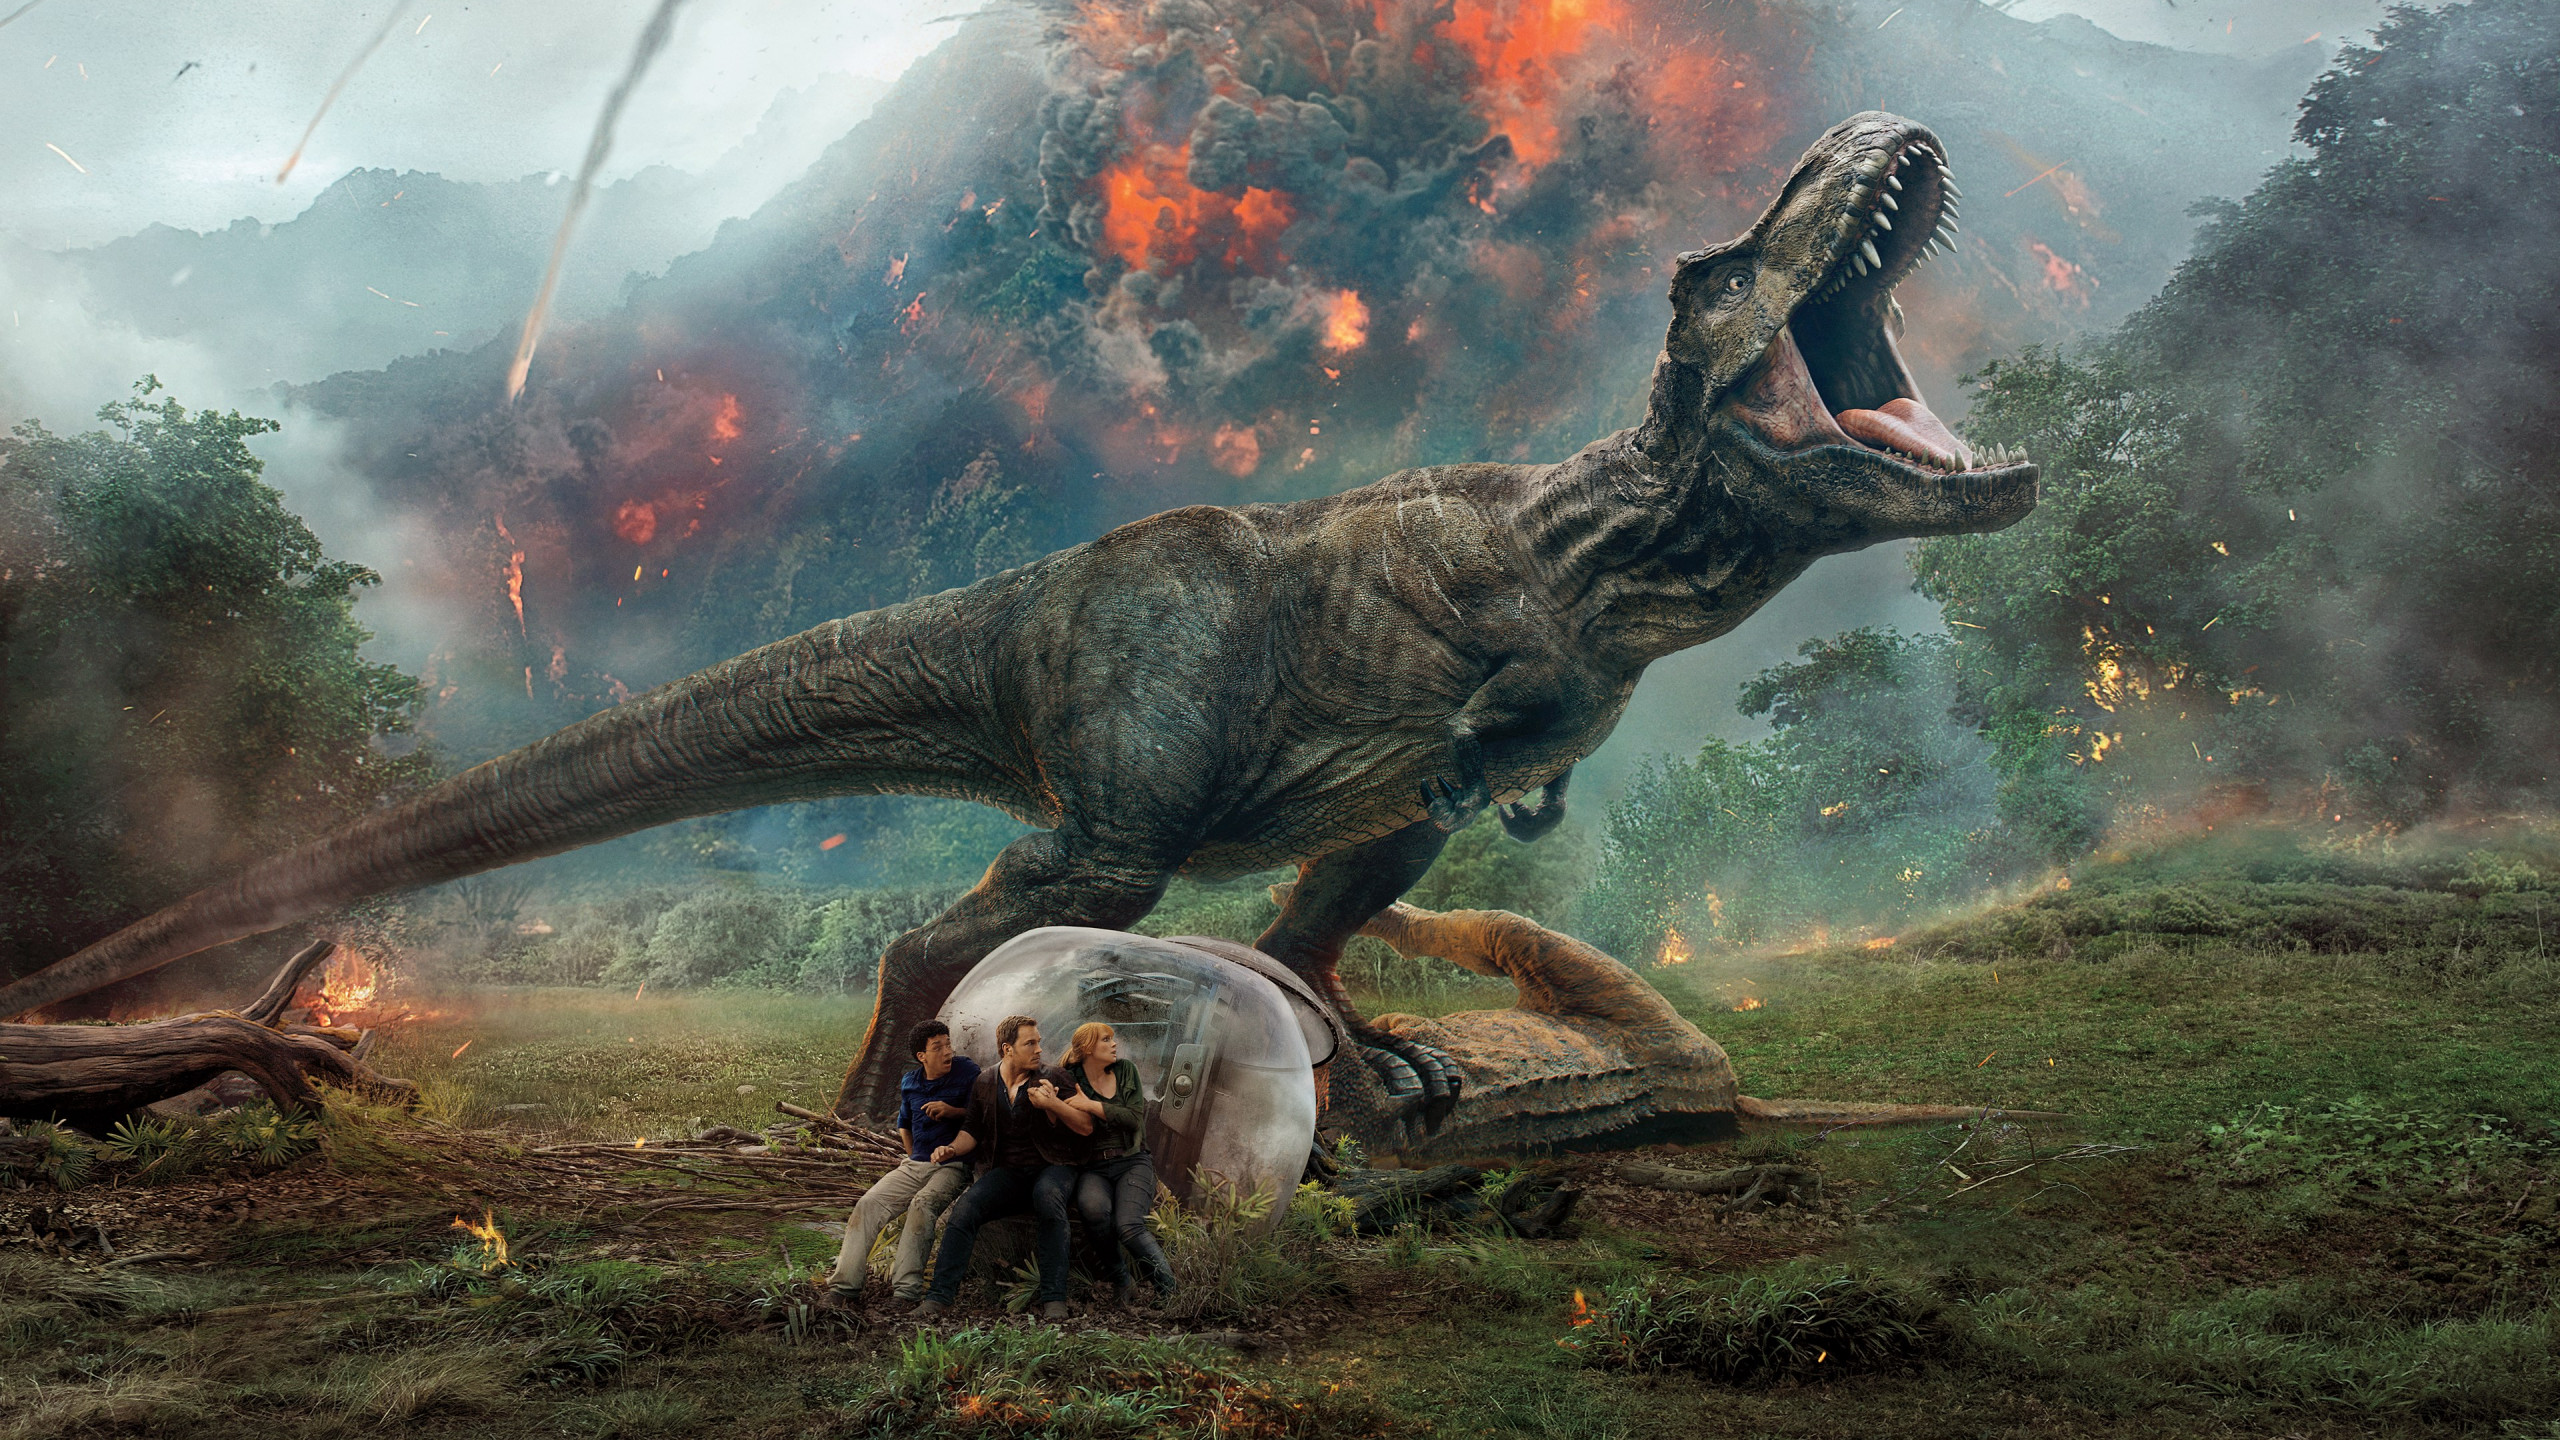 Jurassic World: Fallen Kingdom wallpaper 2560x1440